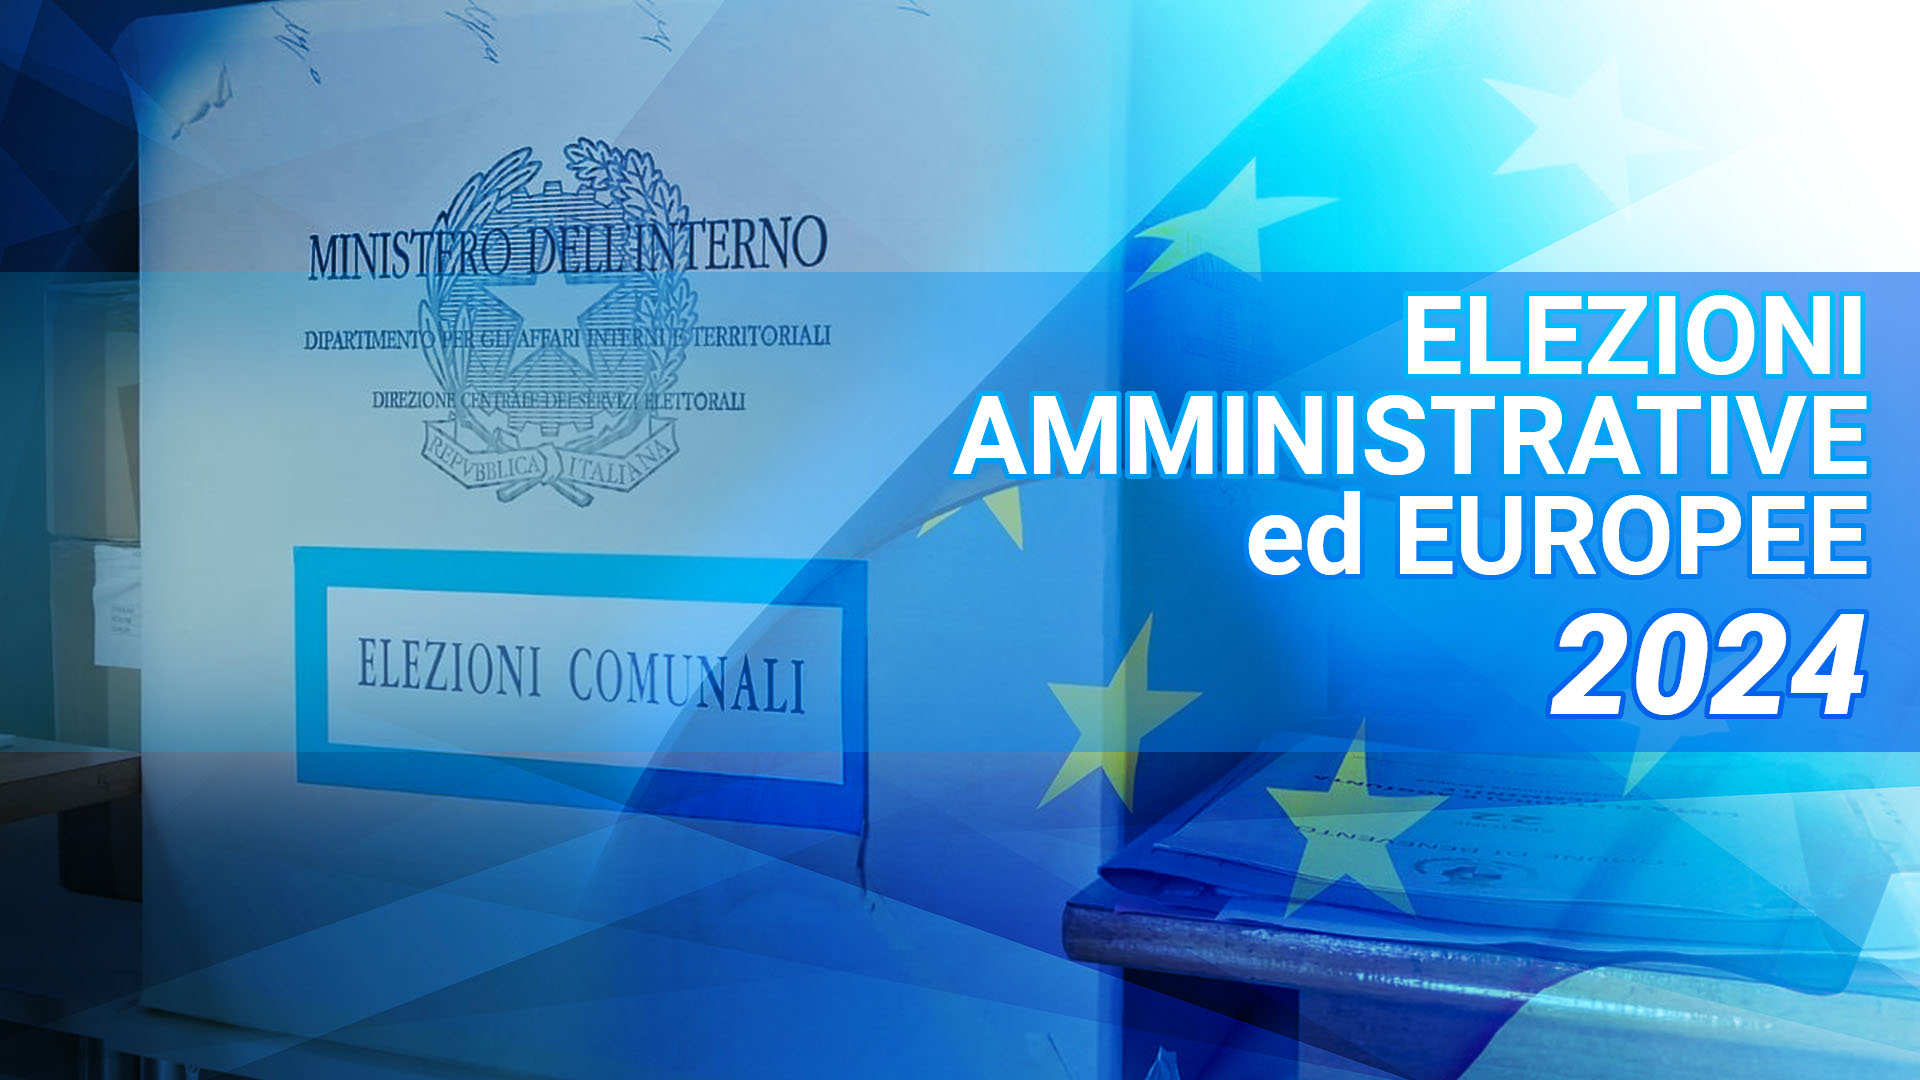 Amministrative ed Europee 2024, codice di autoregolamentazione per la pubblicità elettorale